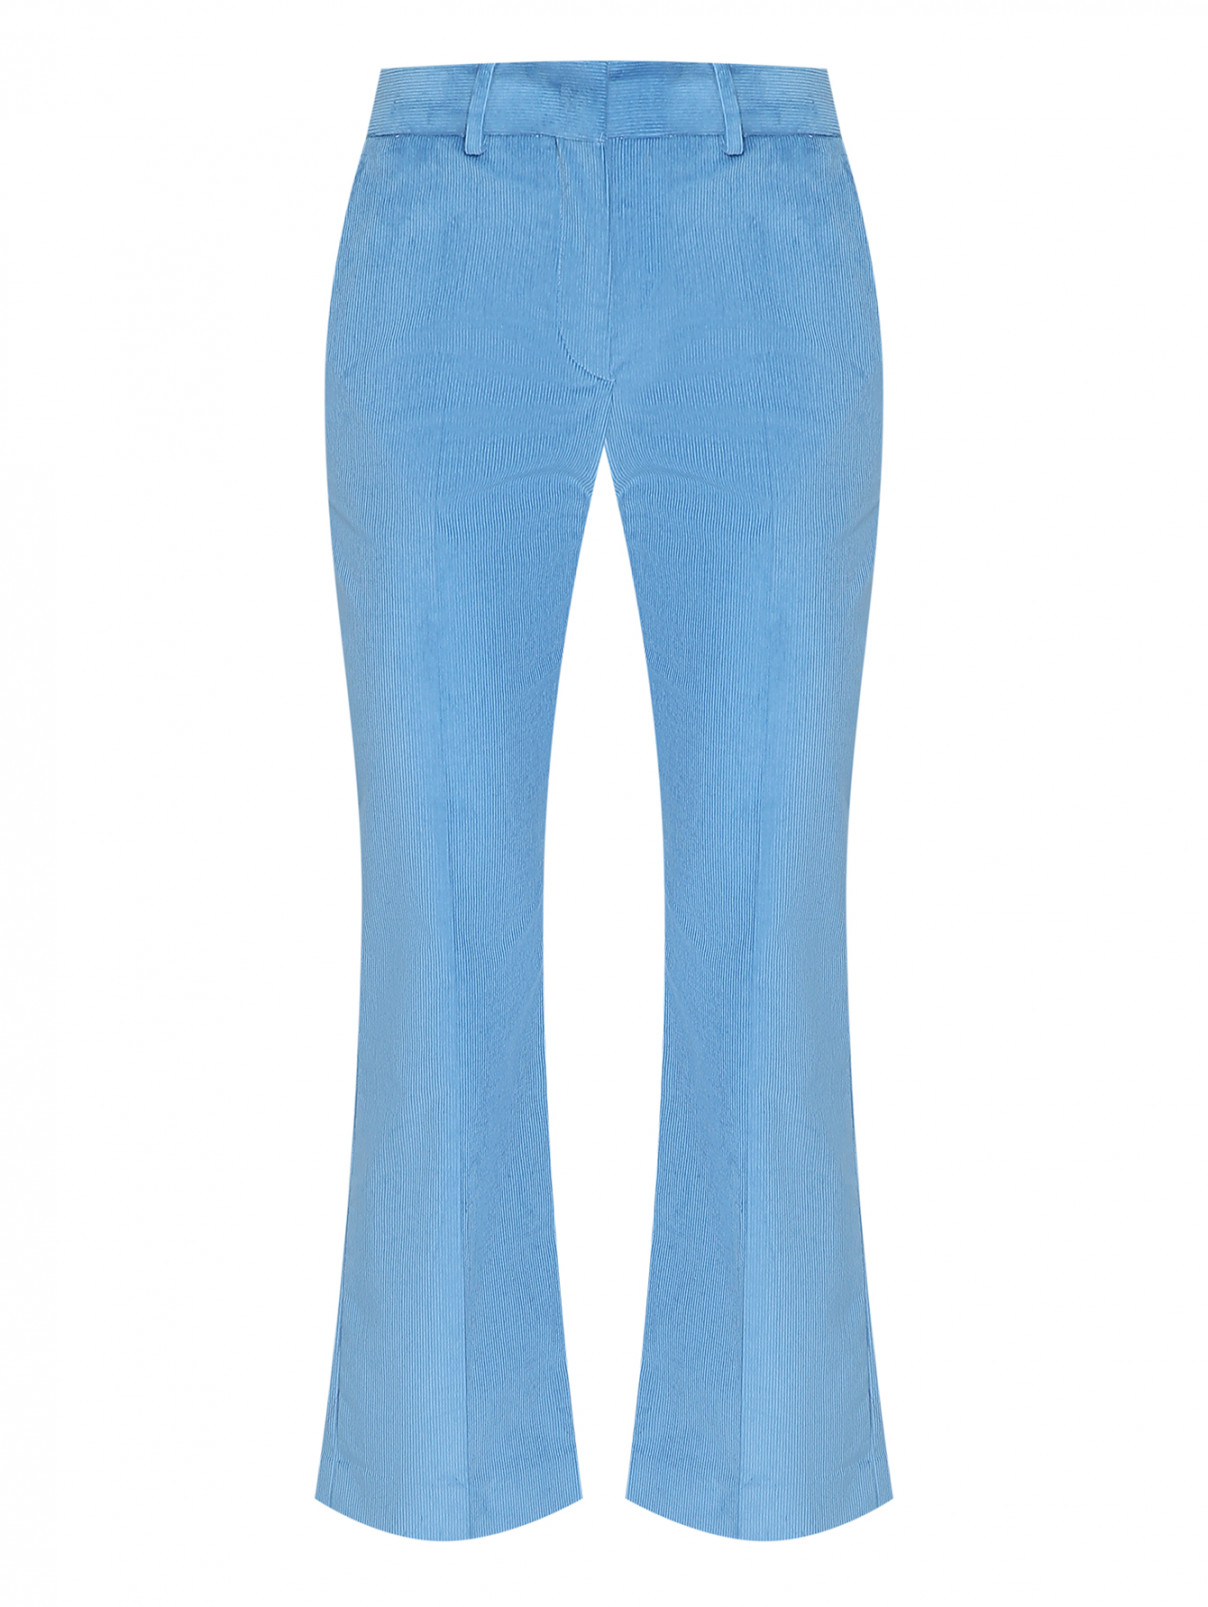 Вельветовые брюки со стрелками Paul Smith  –  Общий вид  – Цвет:  Синий